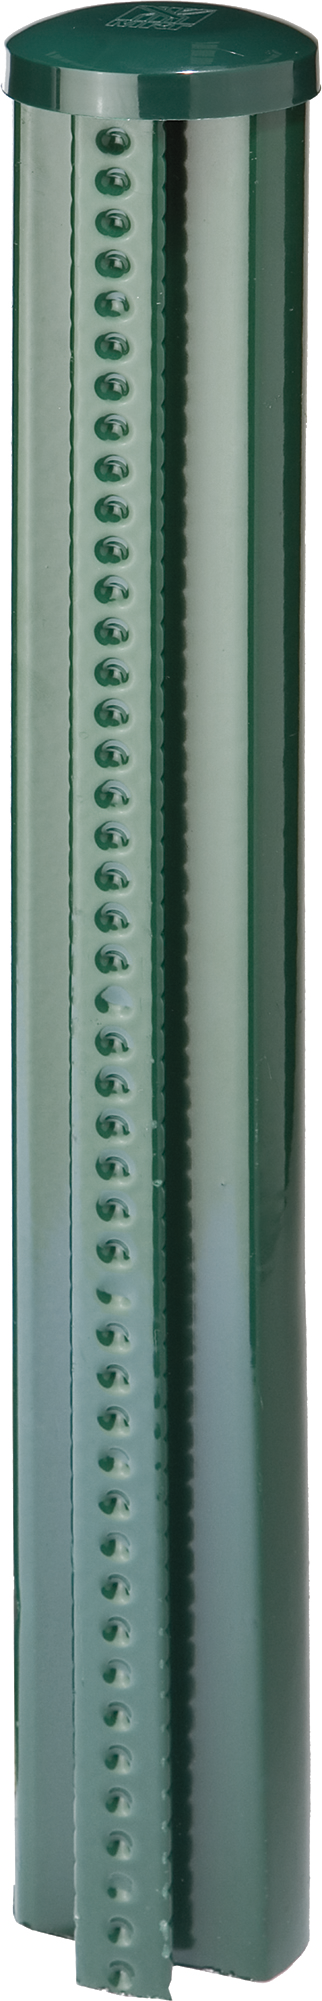 Poste quickfix de acero y pvc verde de 48mm y 185 cm